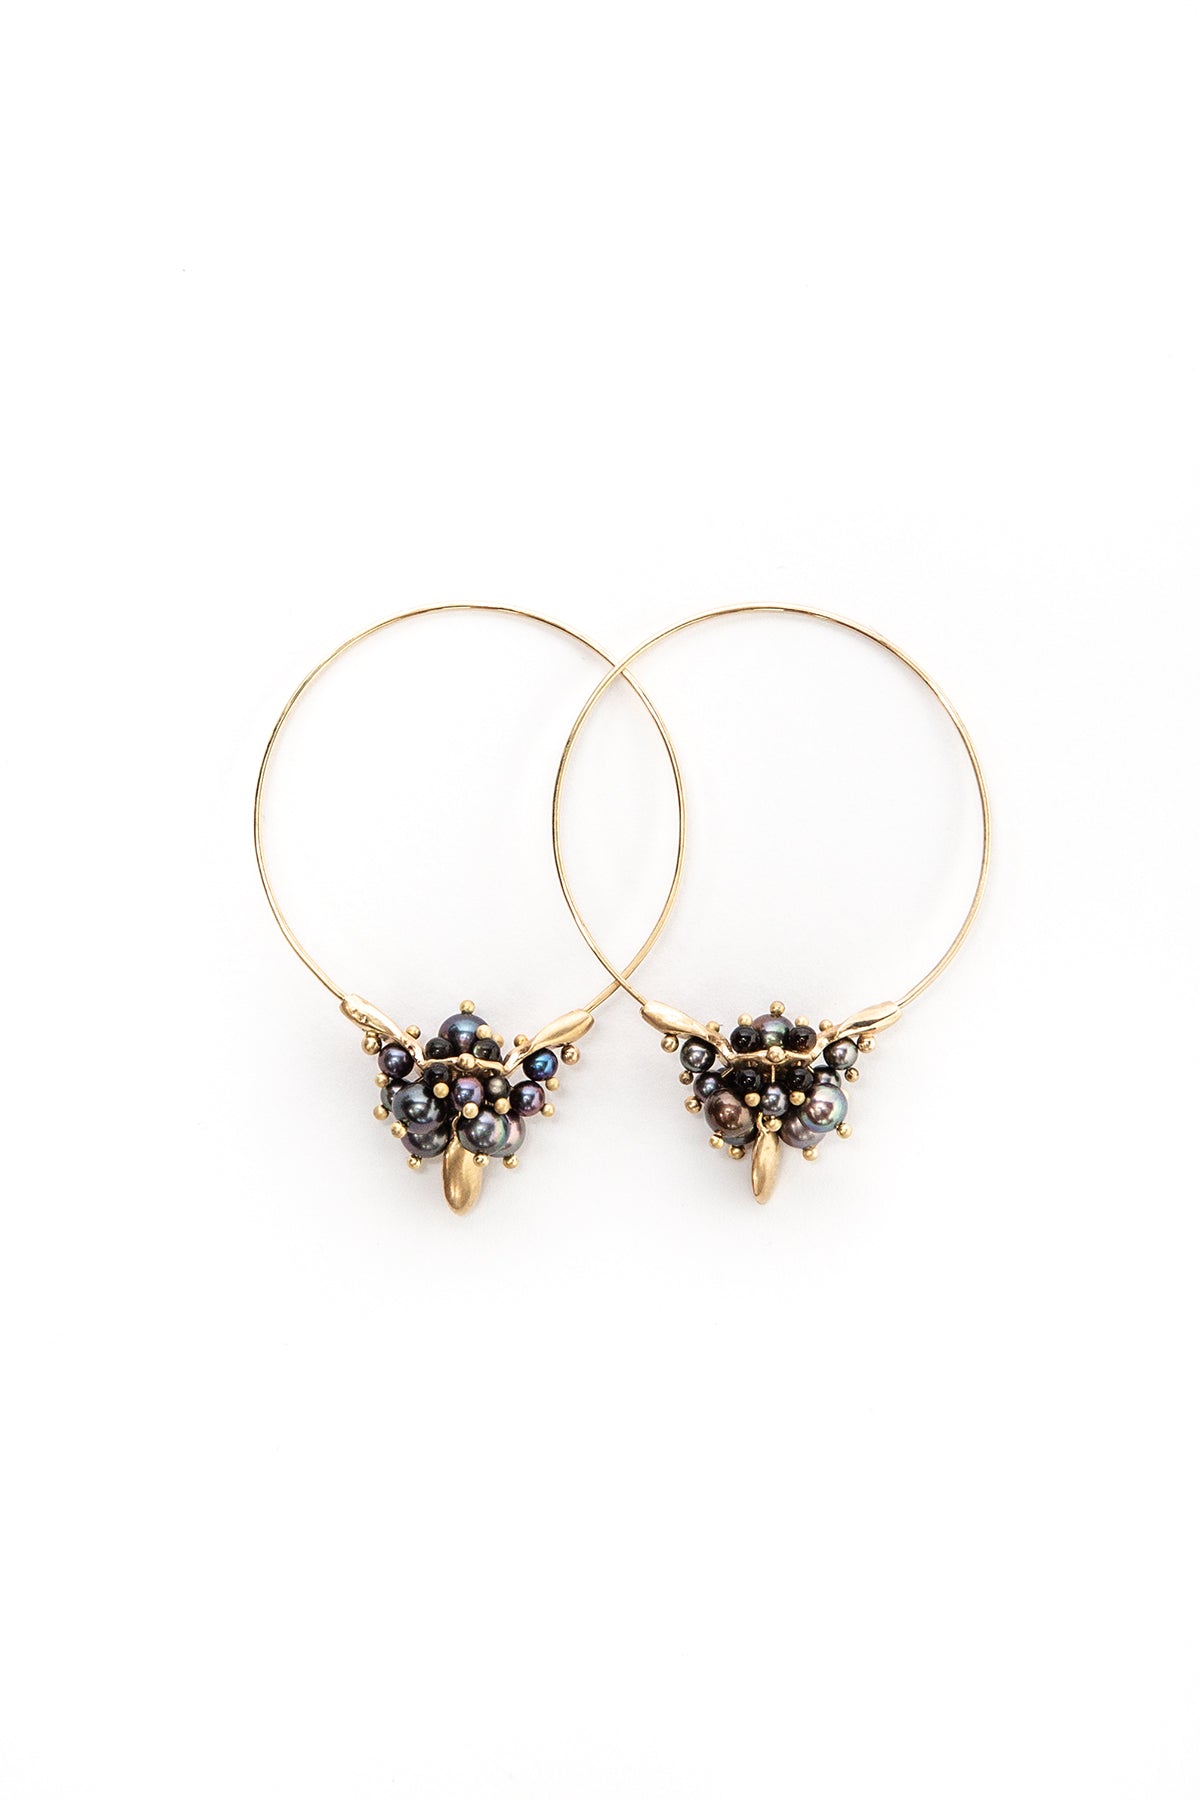 Small Hoop Cluster Earrings with Black Pearls